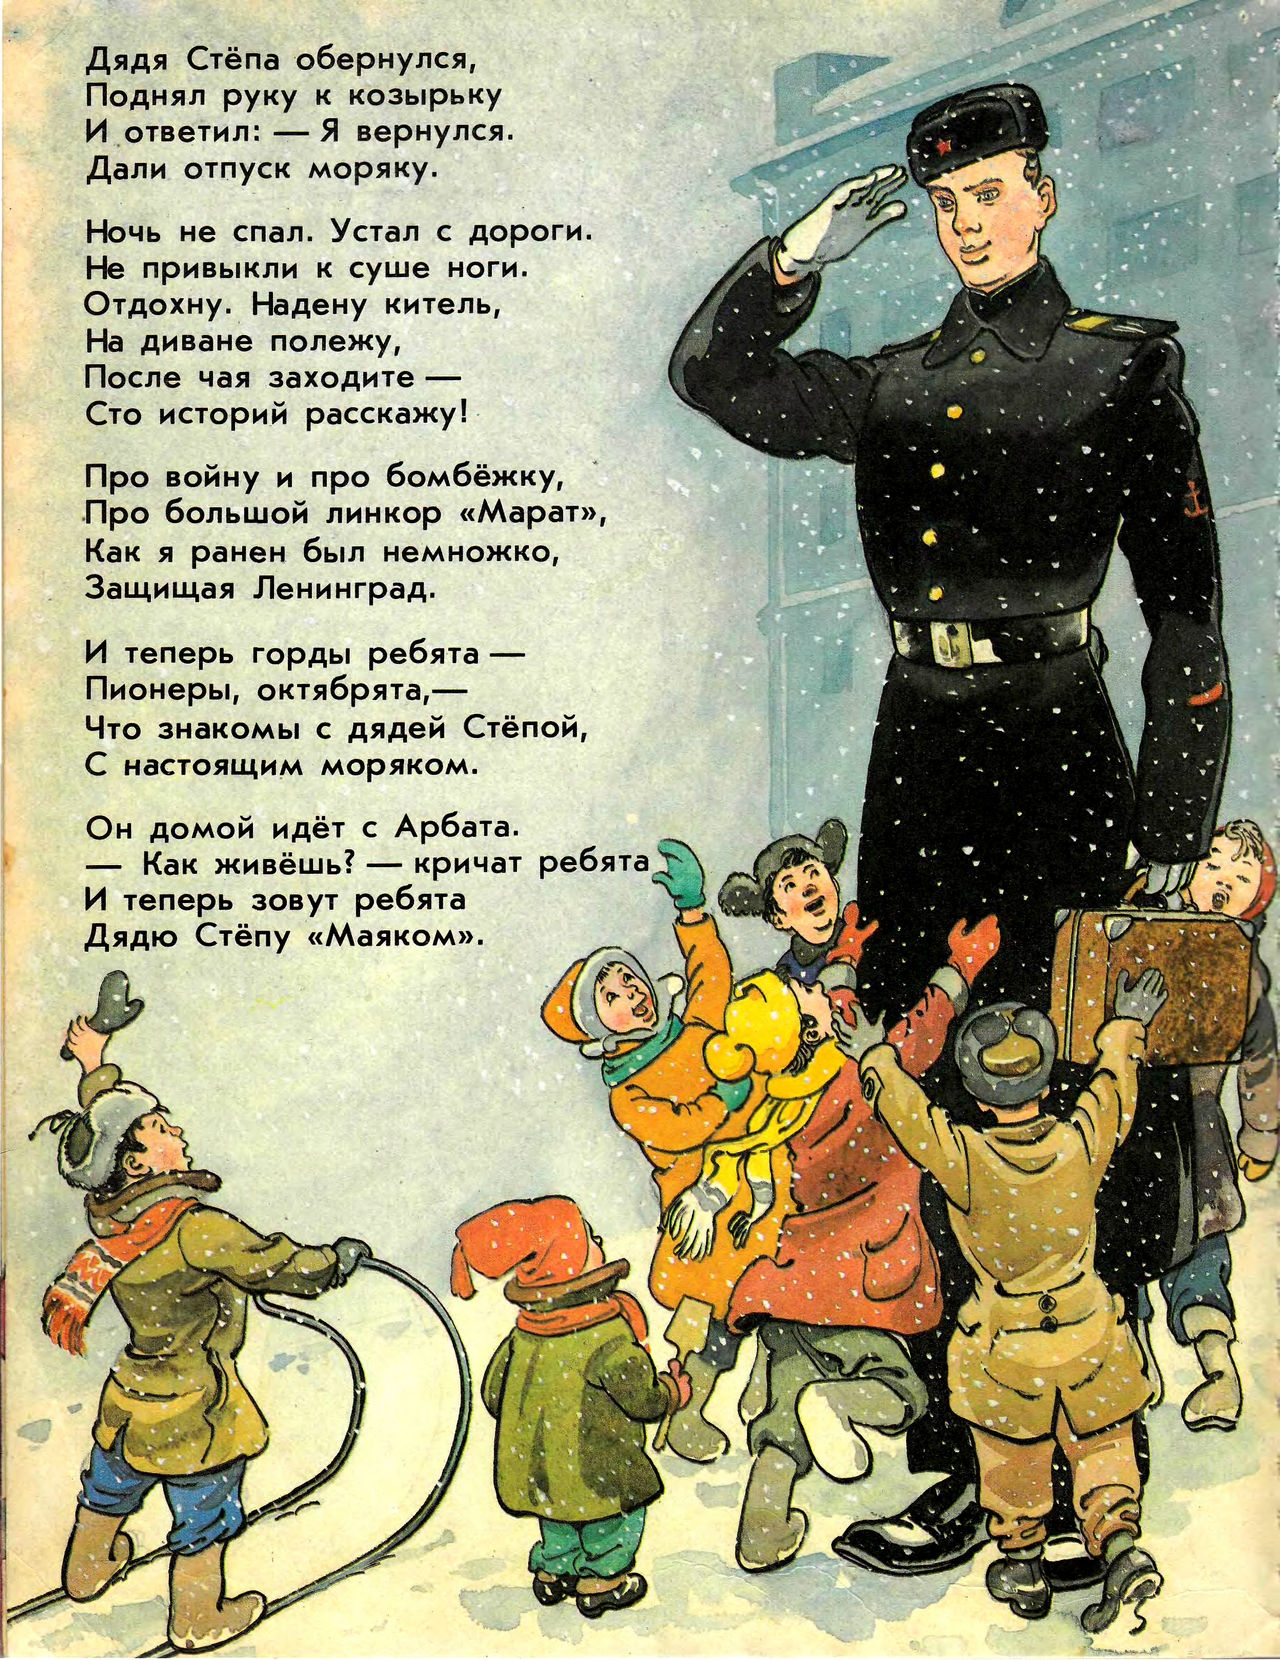 Стихотворение детские советские. ДЯДЯСТЕПА иллюстрации Роьова. Иллюстрации к.Ротова к "дяде степе Михалкова.